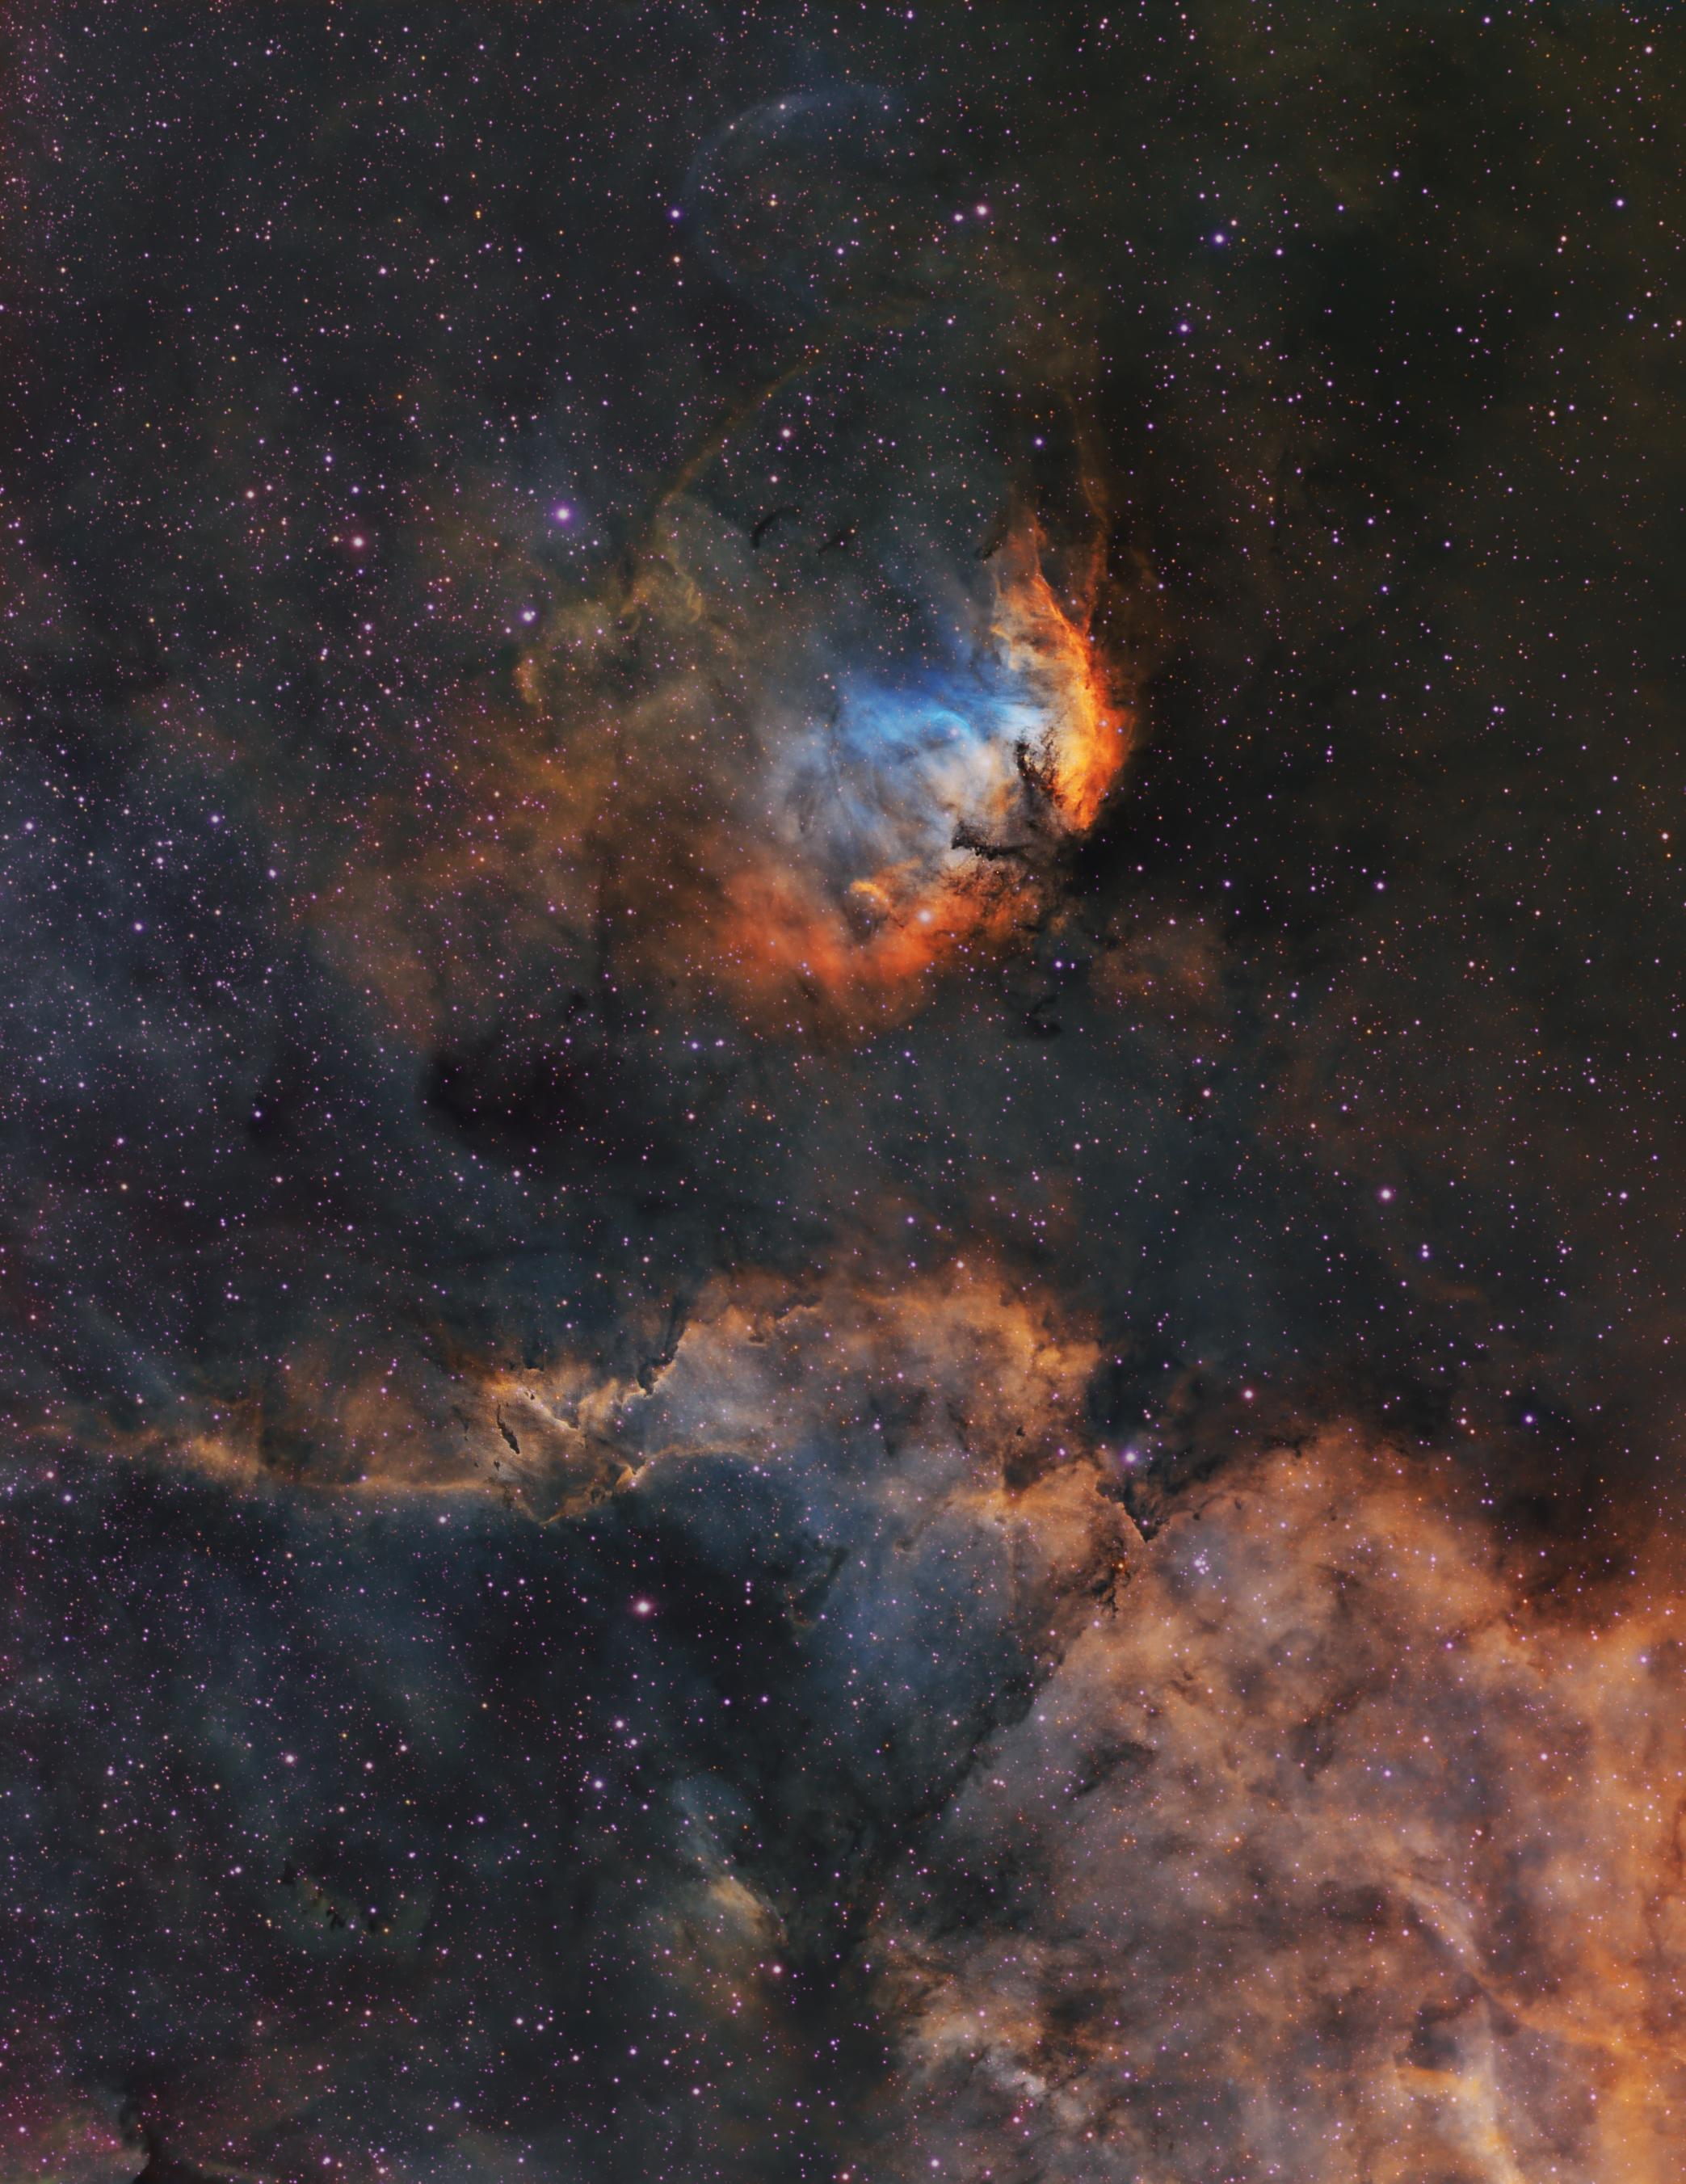 صورة للفضاء العميق بلوح ألوان هَبل تظهر سدماً وعازات وأعبرة بينجميّة، تتناثر النجوم عبر الصورة.